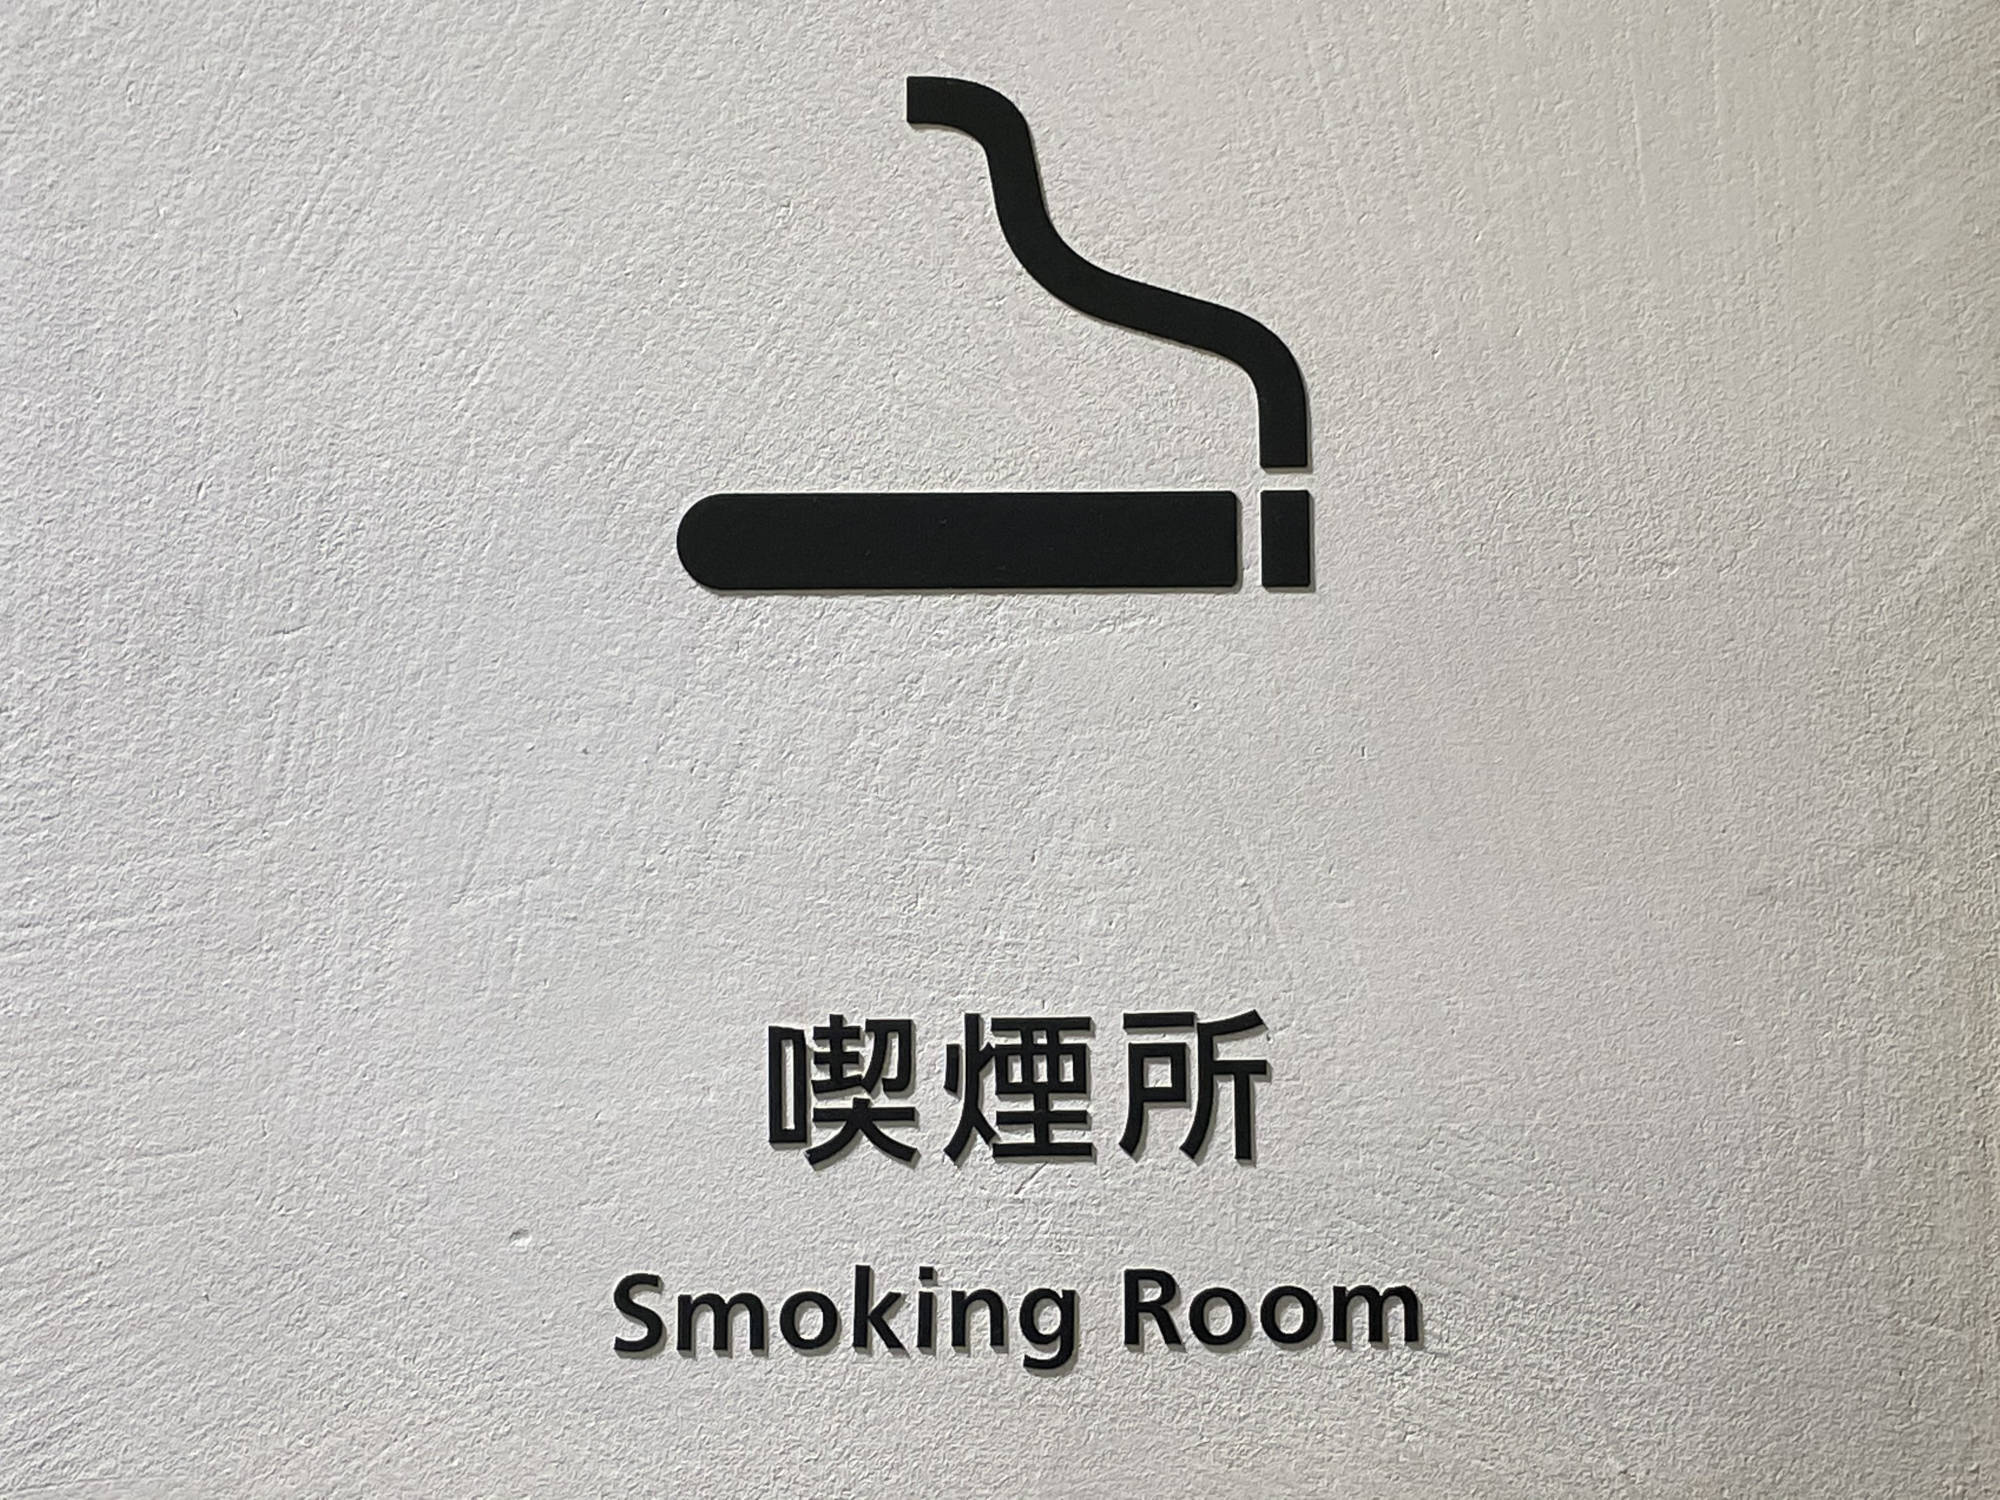 渋谷駅周辺の喫煙所